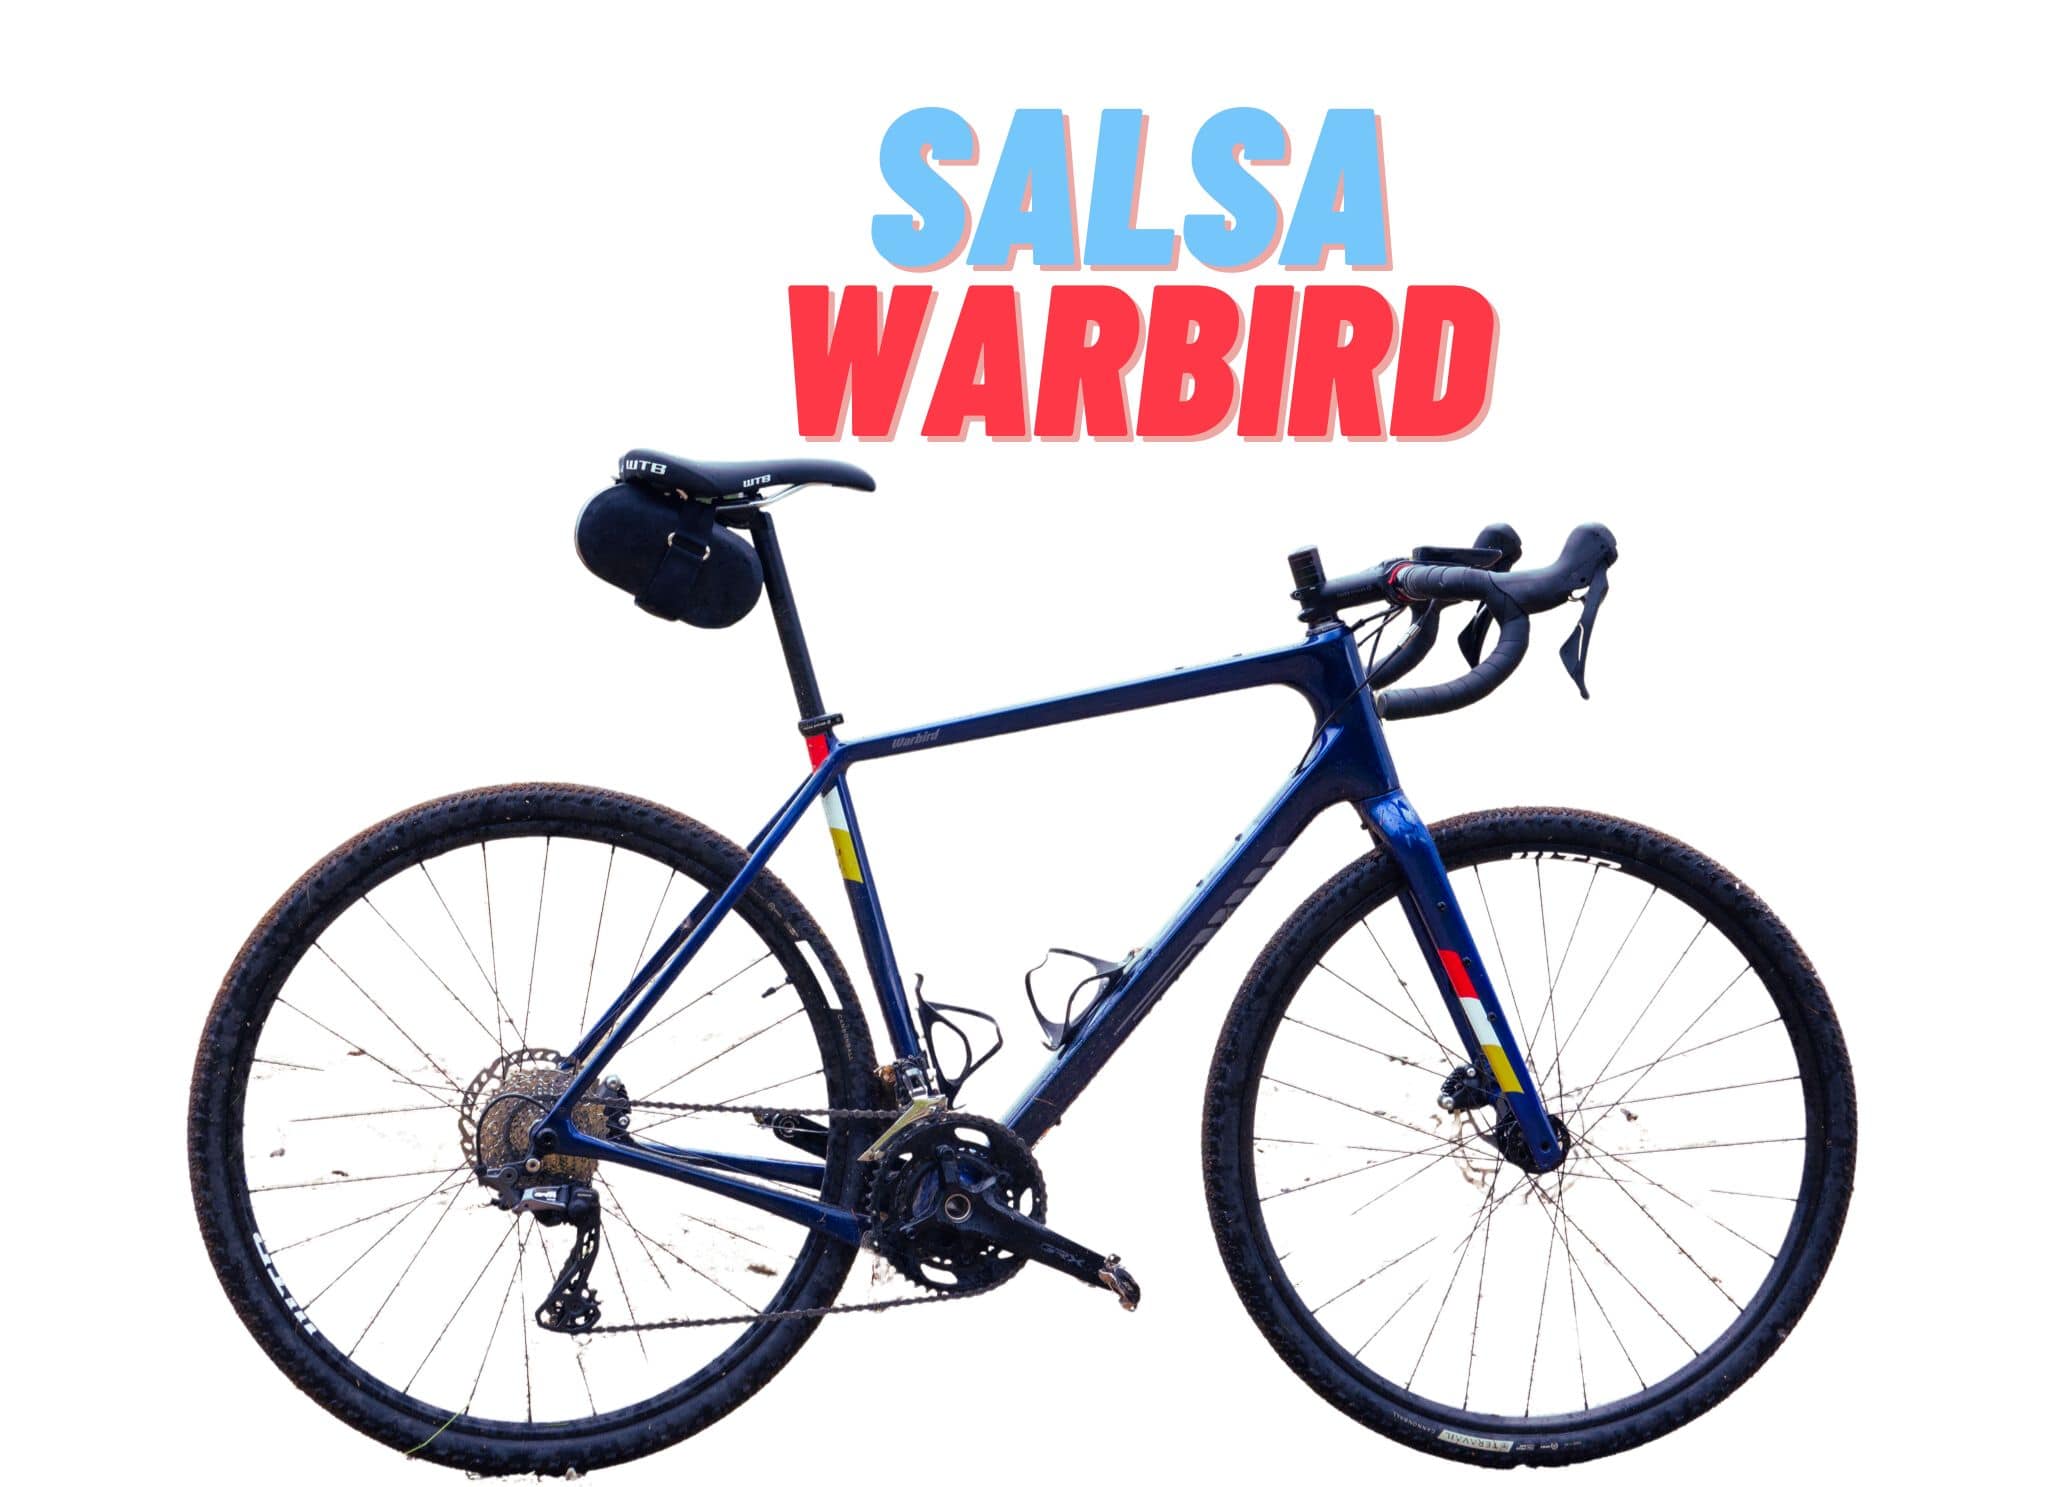 salsa warbird, salsa warbird carbon grx 600 review